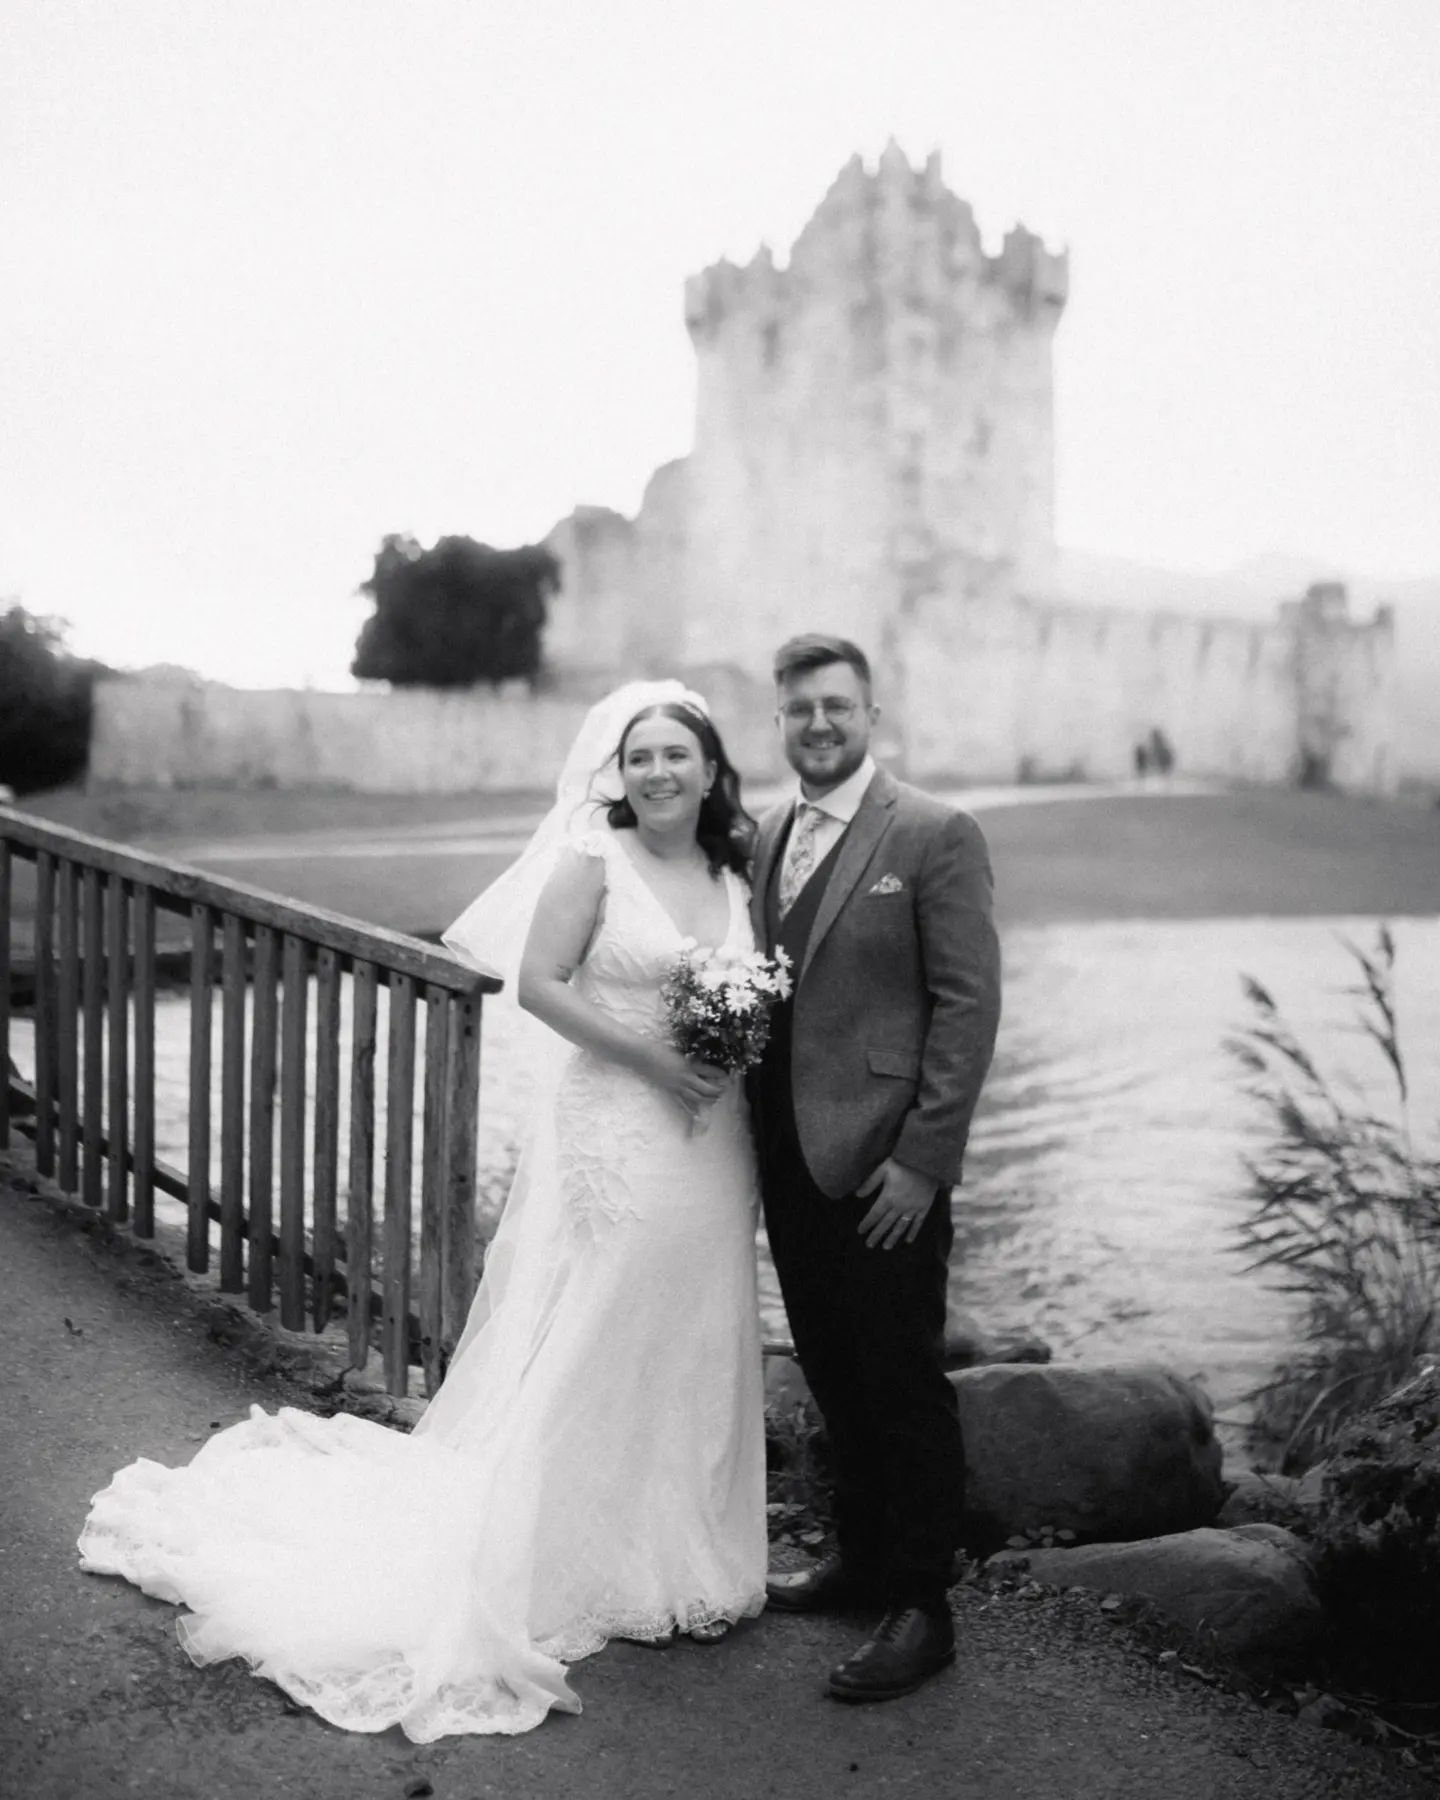 Sam and Niamh 💕
@heightshotelkillarney 
@ealishwhillock 

#weddingphotography #irishweddingphotographer